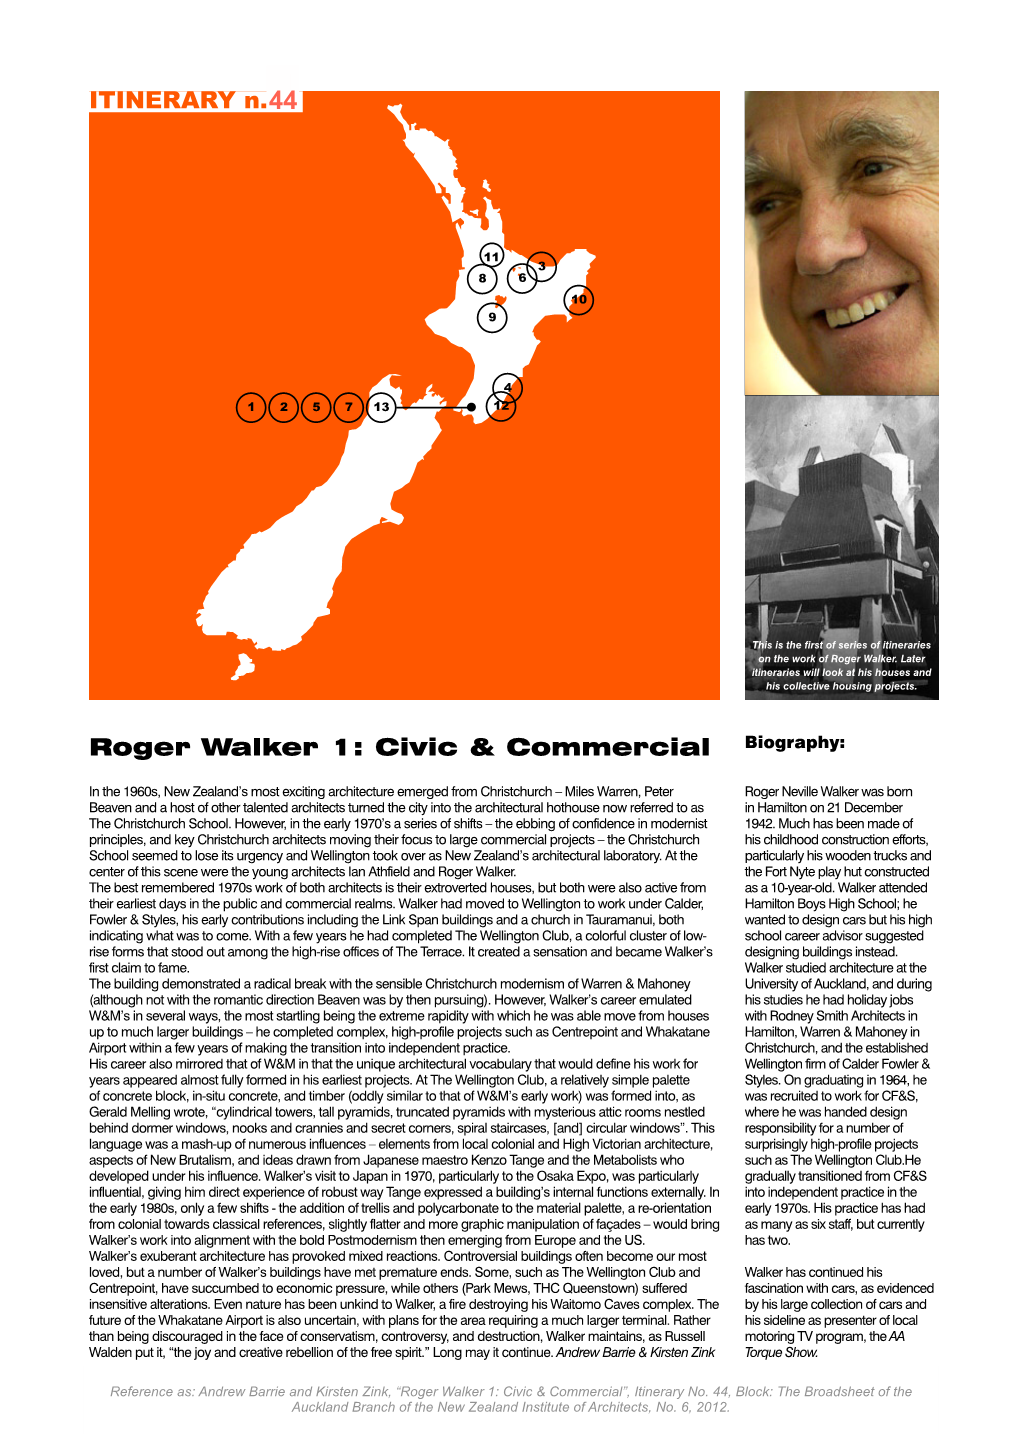 Roger Walker 1: Civic & Commercial